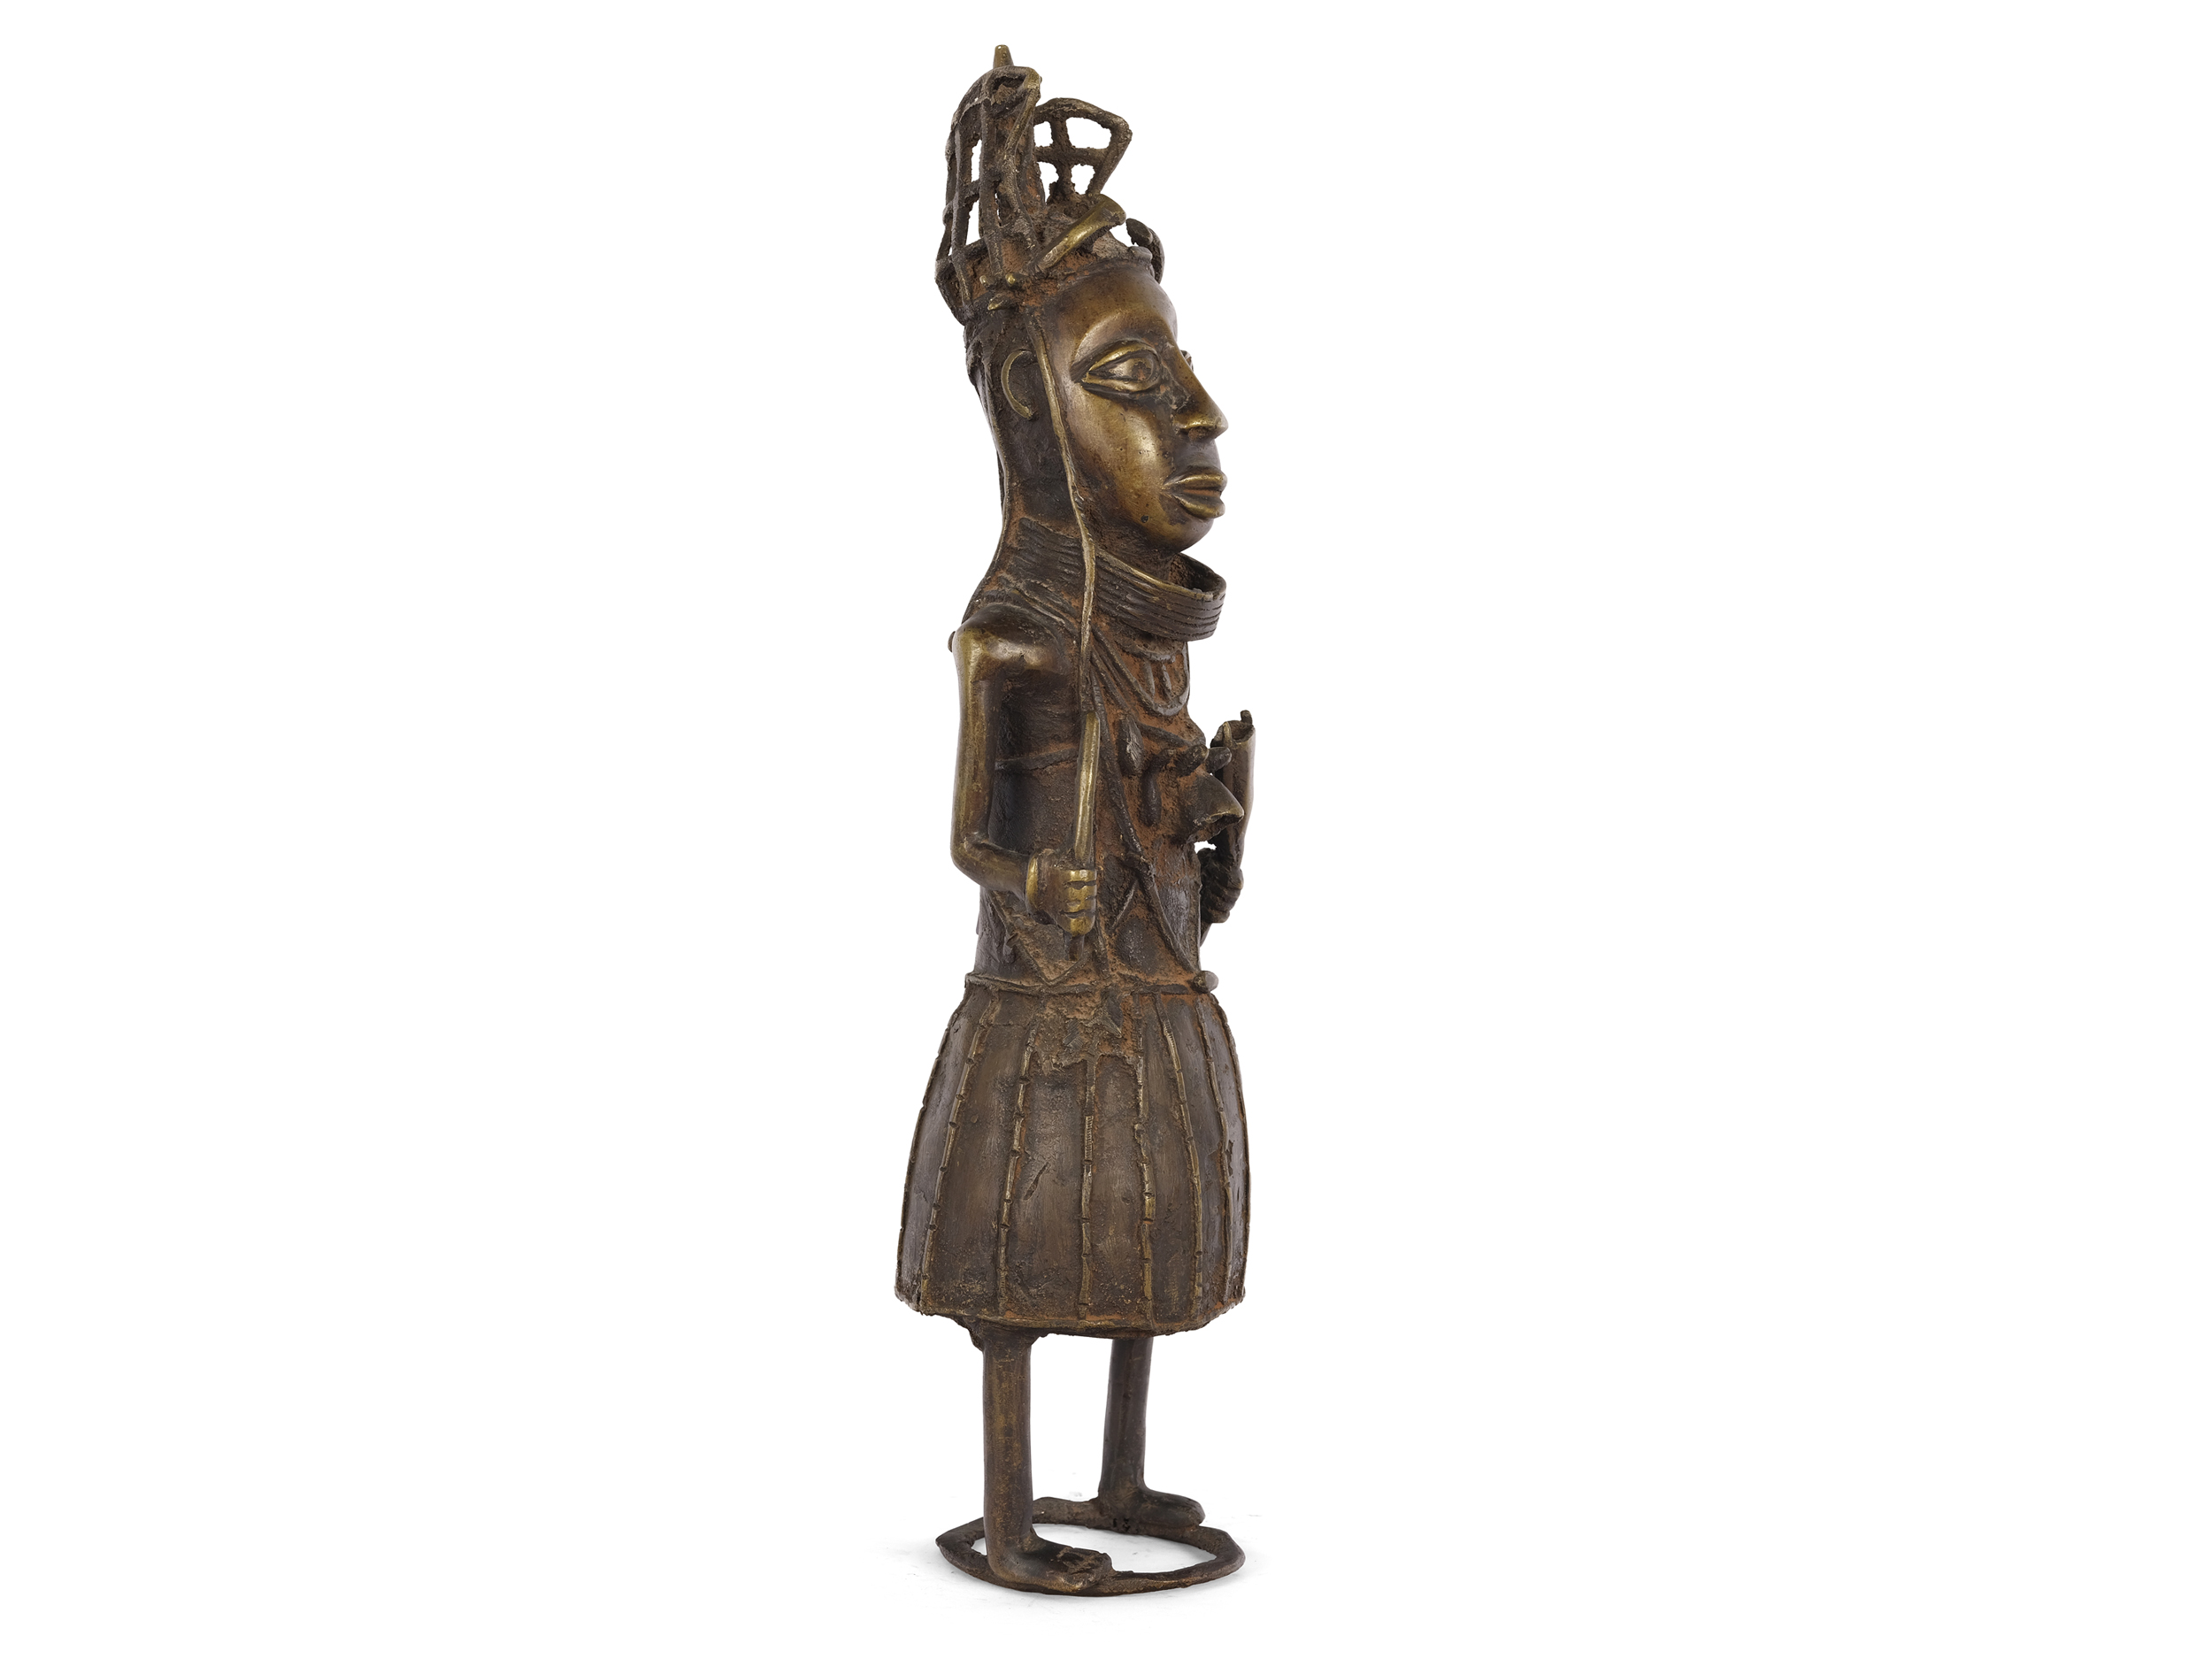 Benin figure, West Africa - Image 2 of 4